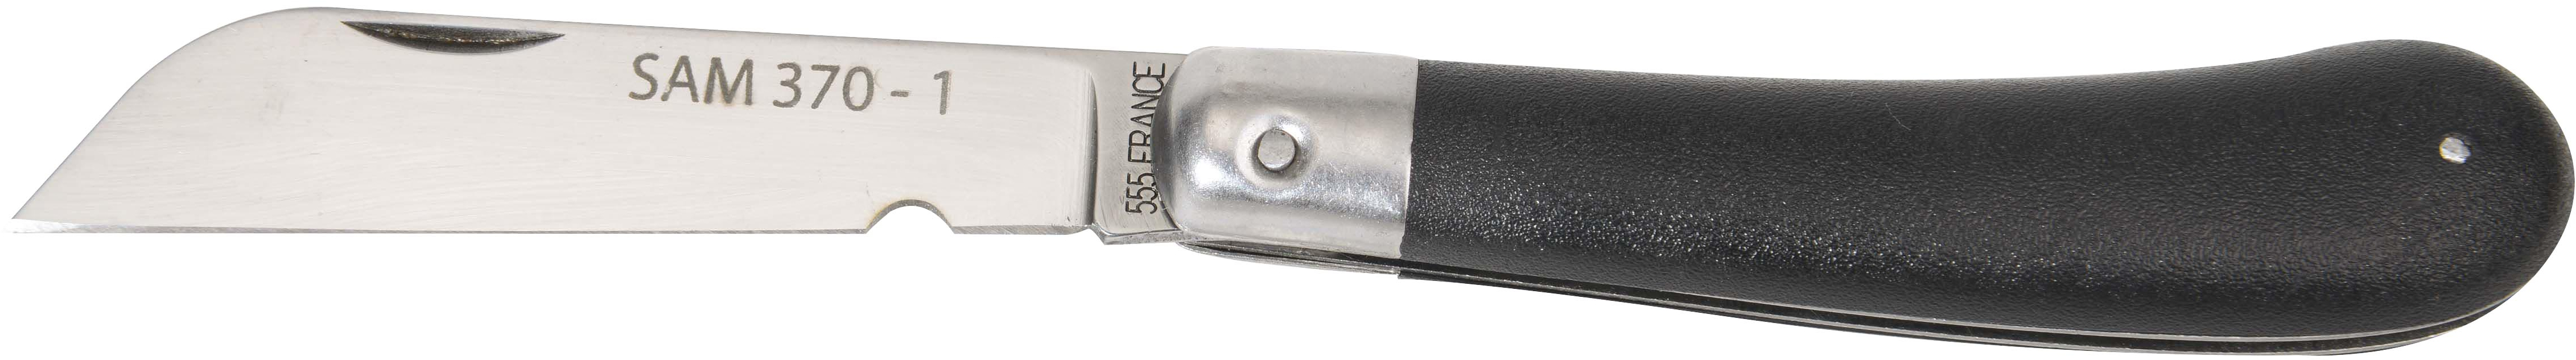 370-1  Couteau pour électricien une lame - Cisailles, cutters, ciseaux